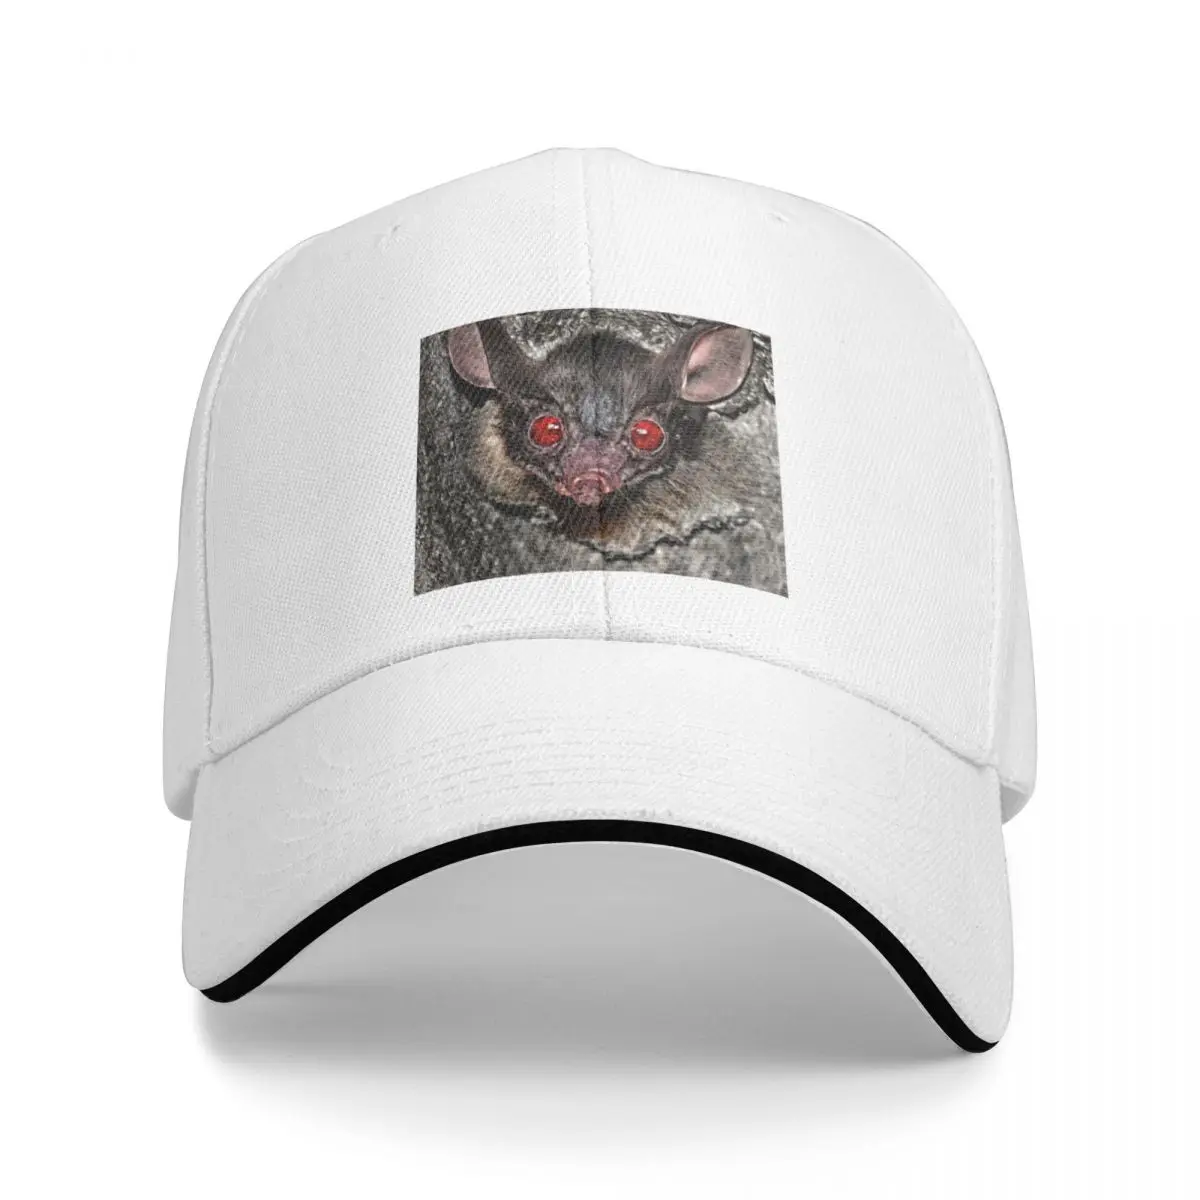 Портрет летучей мыши с красными глазами, макросъемка, бейсболка, Новая шляпа, альпинистская роскошная брендовая шляпа для гольфа, Женская мужская